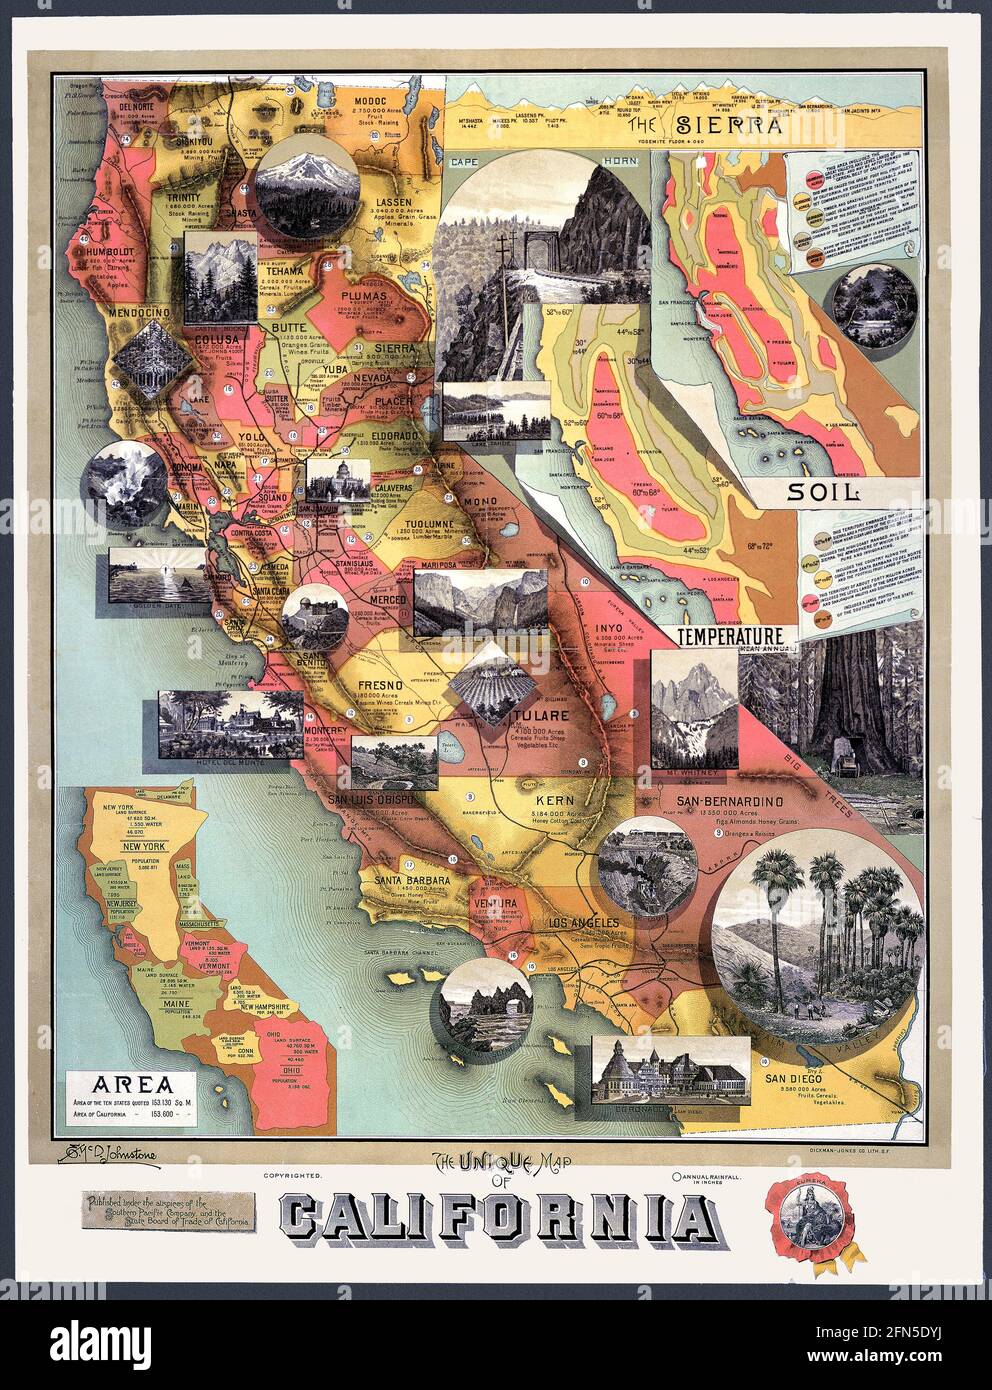 Die alte kalifornische Karte, die 1890 veröffentlicht wurde und von einer Eisenbahn gesponsert wurde, gibt interessante Fakten. Insert Maps enthält Informationen, darunter eine, die die relative Größe von Kalifornien im Vergleich zu anderen Staaten zeigt. Ein anderer zeigt einen Querschnitt der Sierra Nevada Mountains und die Erhebung einiger Gipfel. Vignetten zeigen klassische kalifornische Bilder. Stockfoto